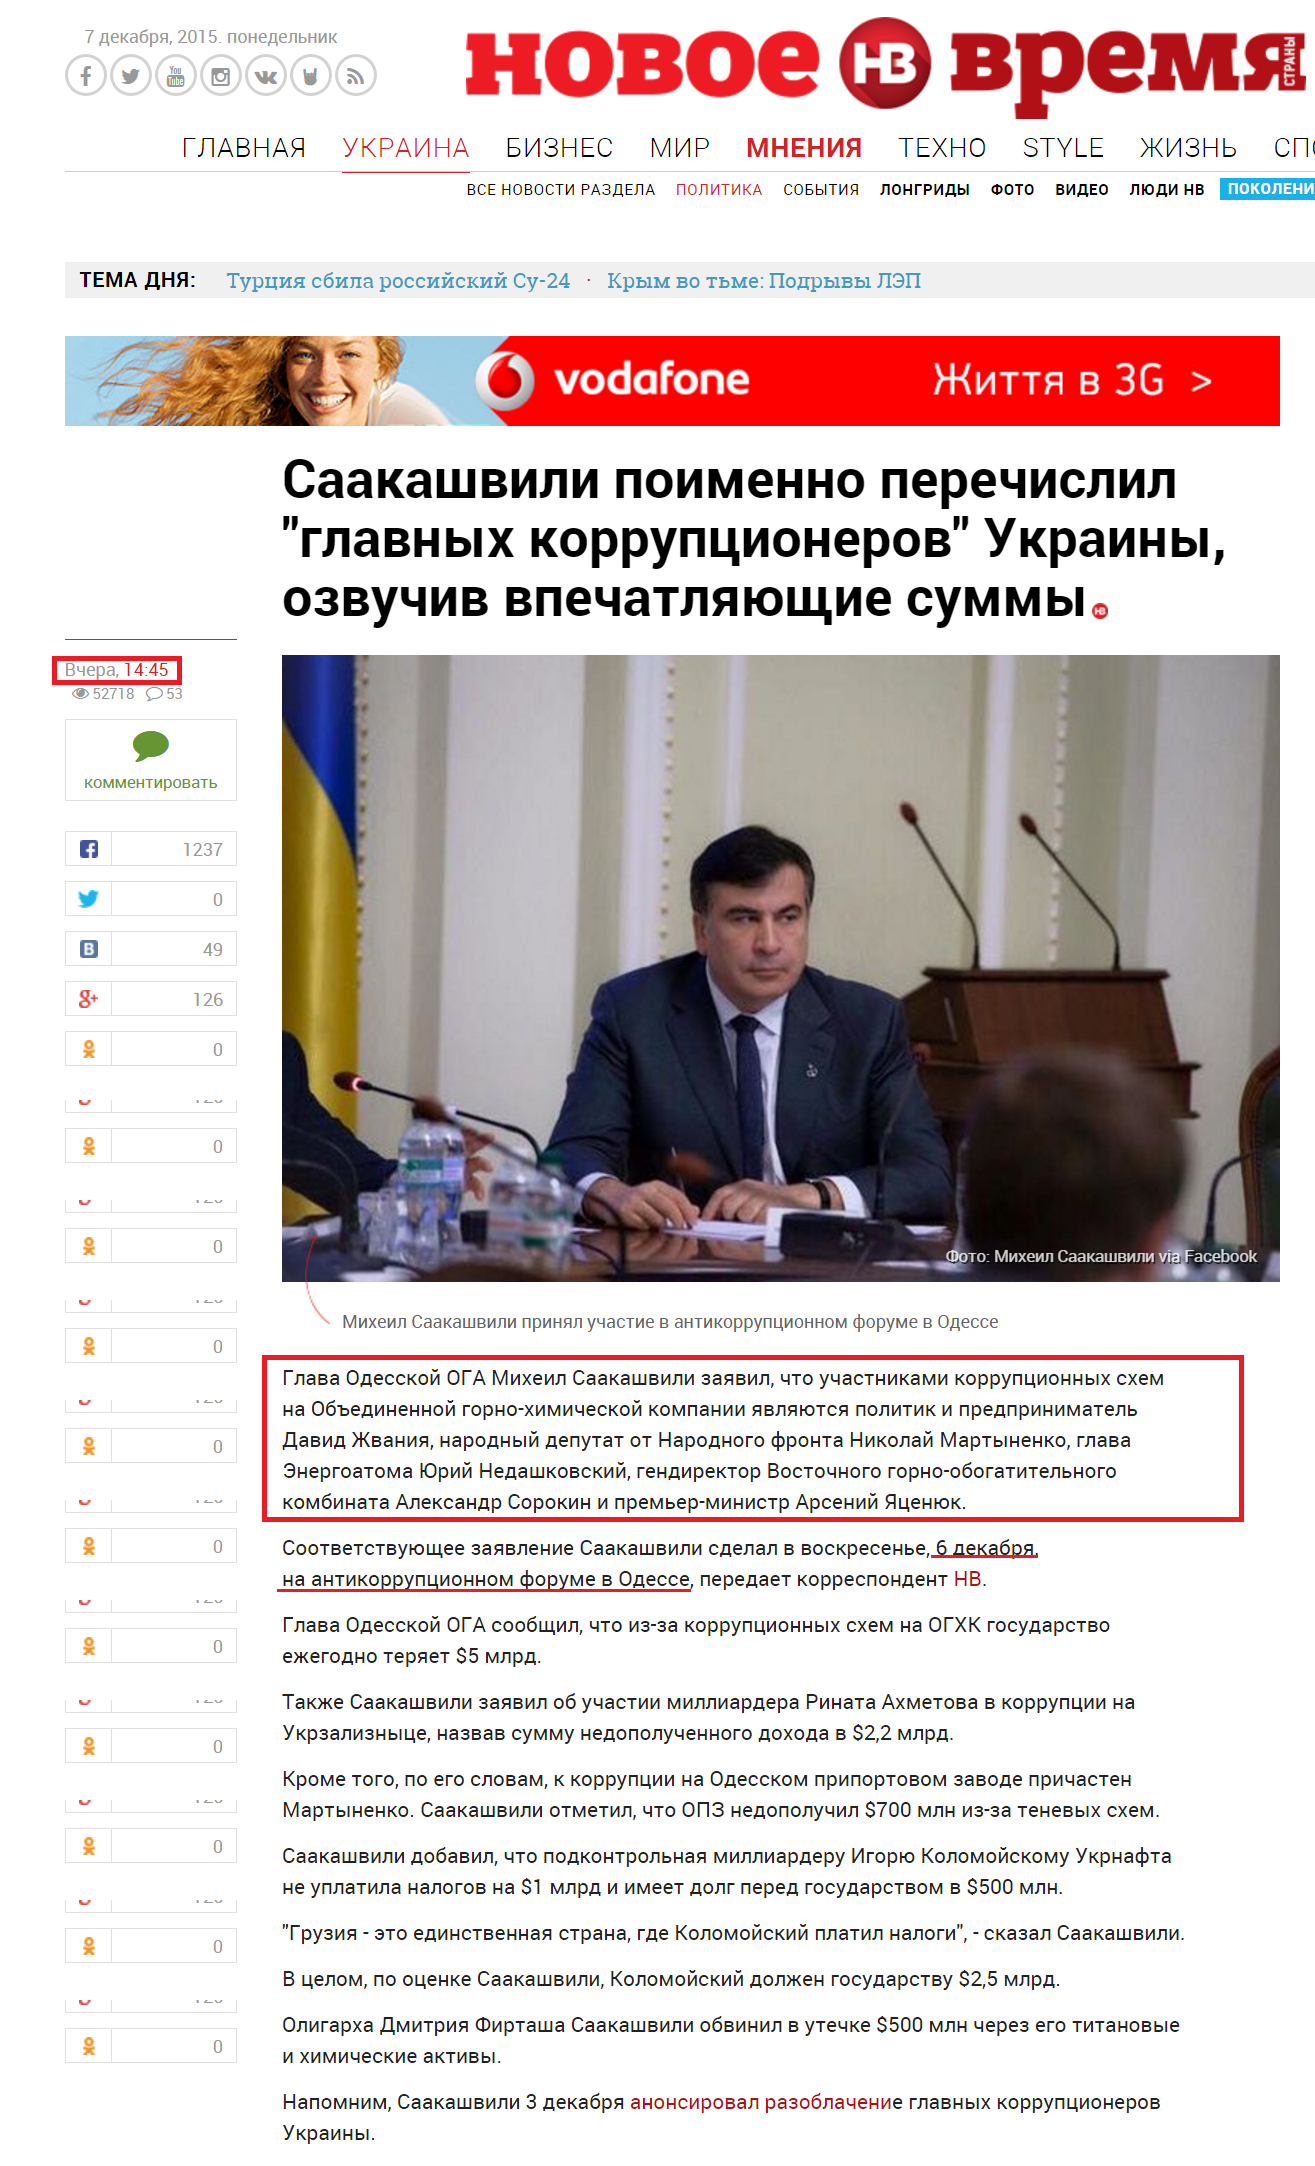 http://nv.ua/ukraine/politics/saakashvili-poimenno-perechislil-glavnyh-korruptsionerov-ukrainy-i-nazval-vpechatljajushchie-summy-84204.html